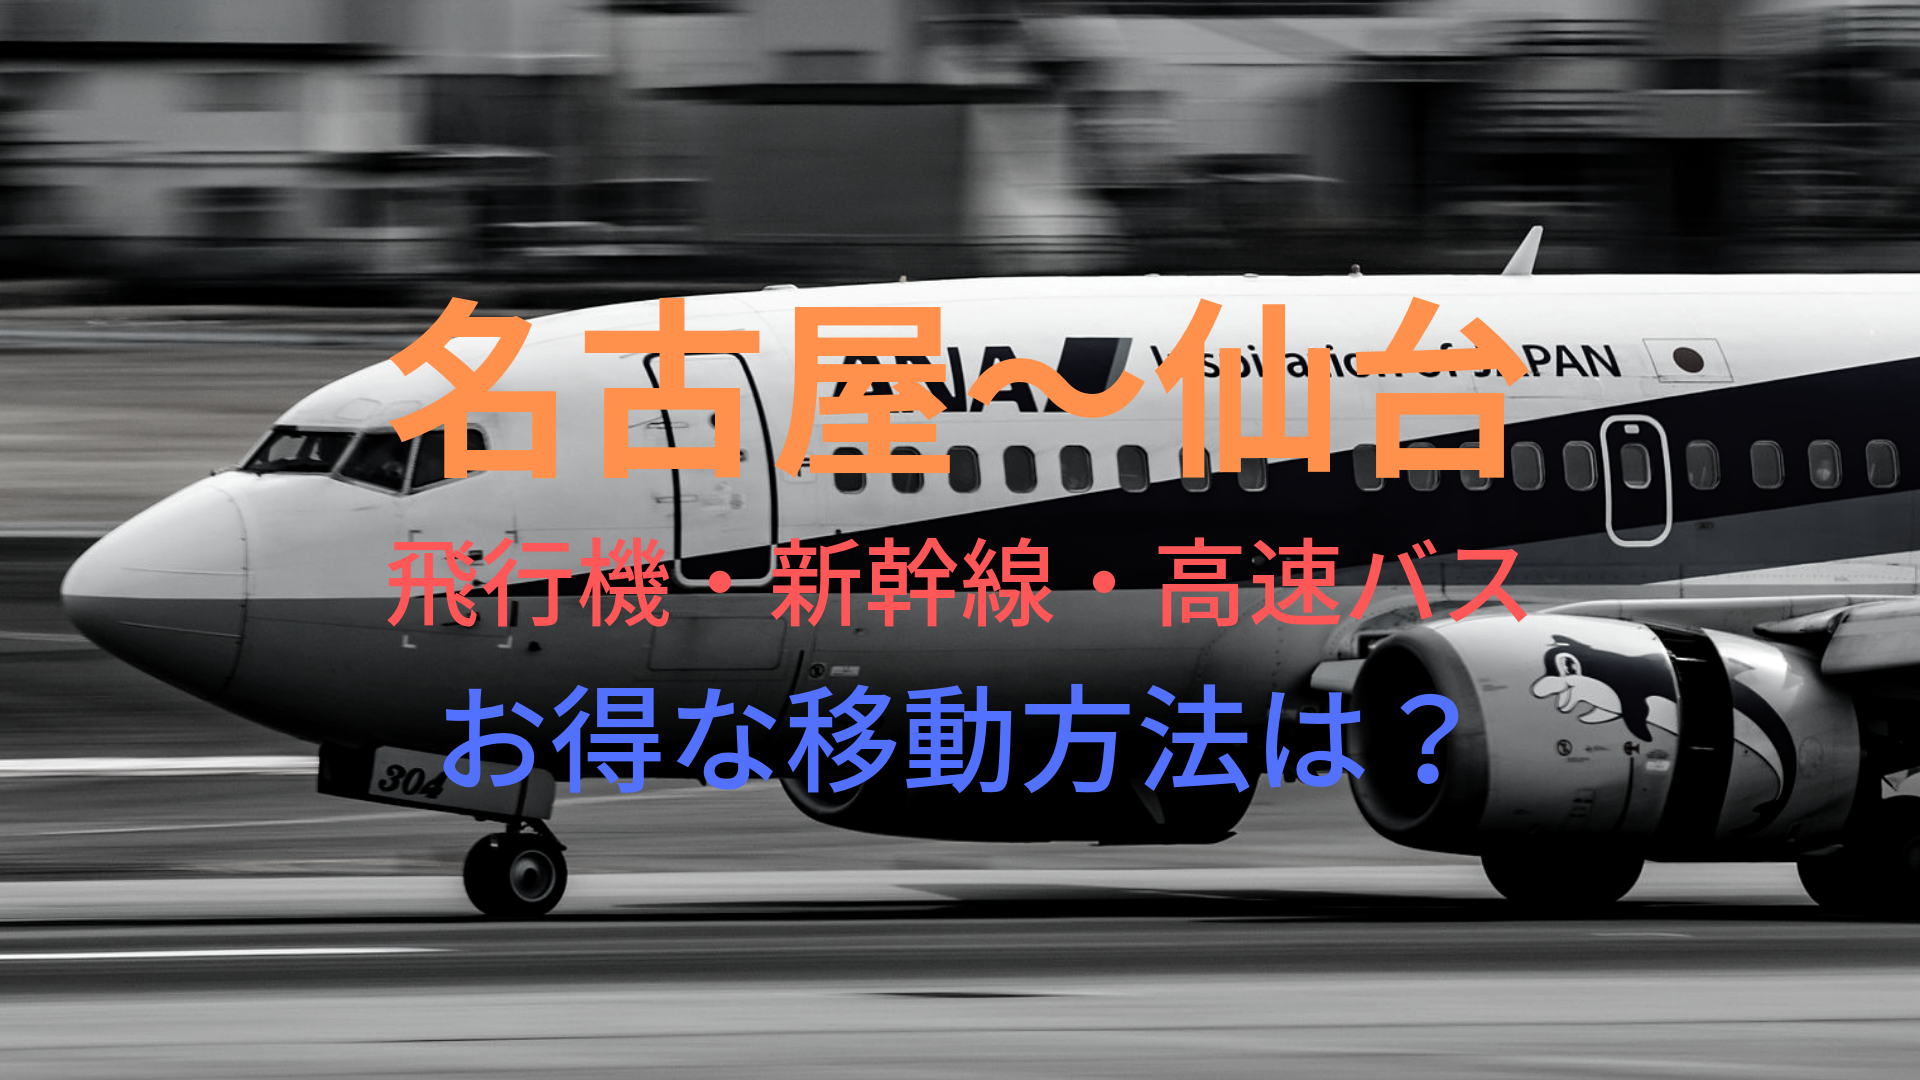 名古屋 仙台 8000円 格安で移動する方法は 飛行機 新幹線 高速バスをそれぞれ比較 ばしたく交通